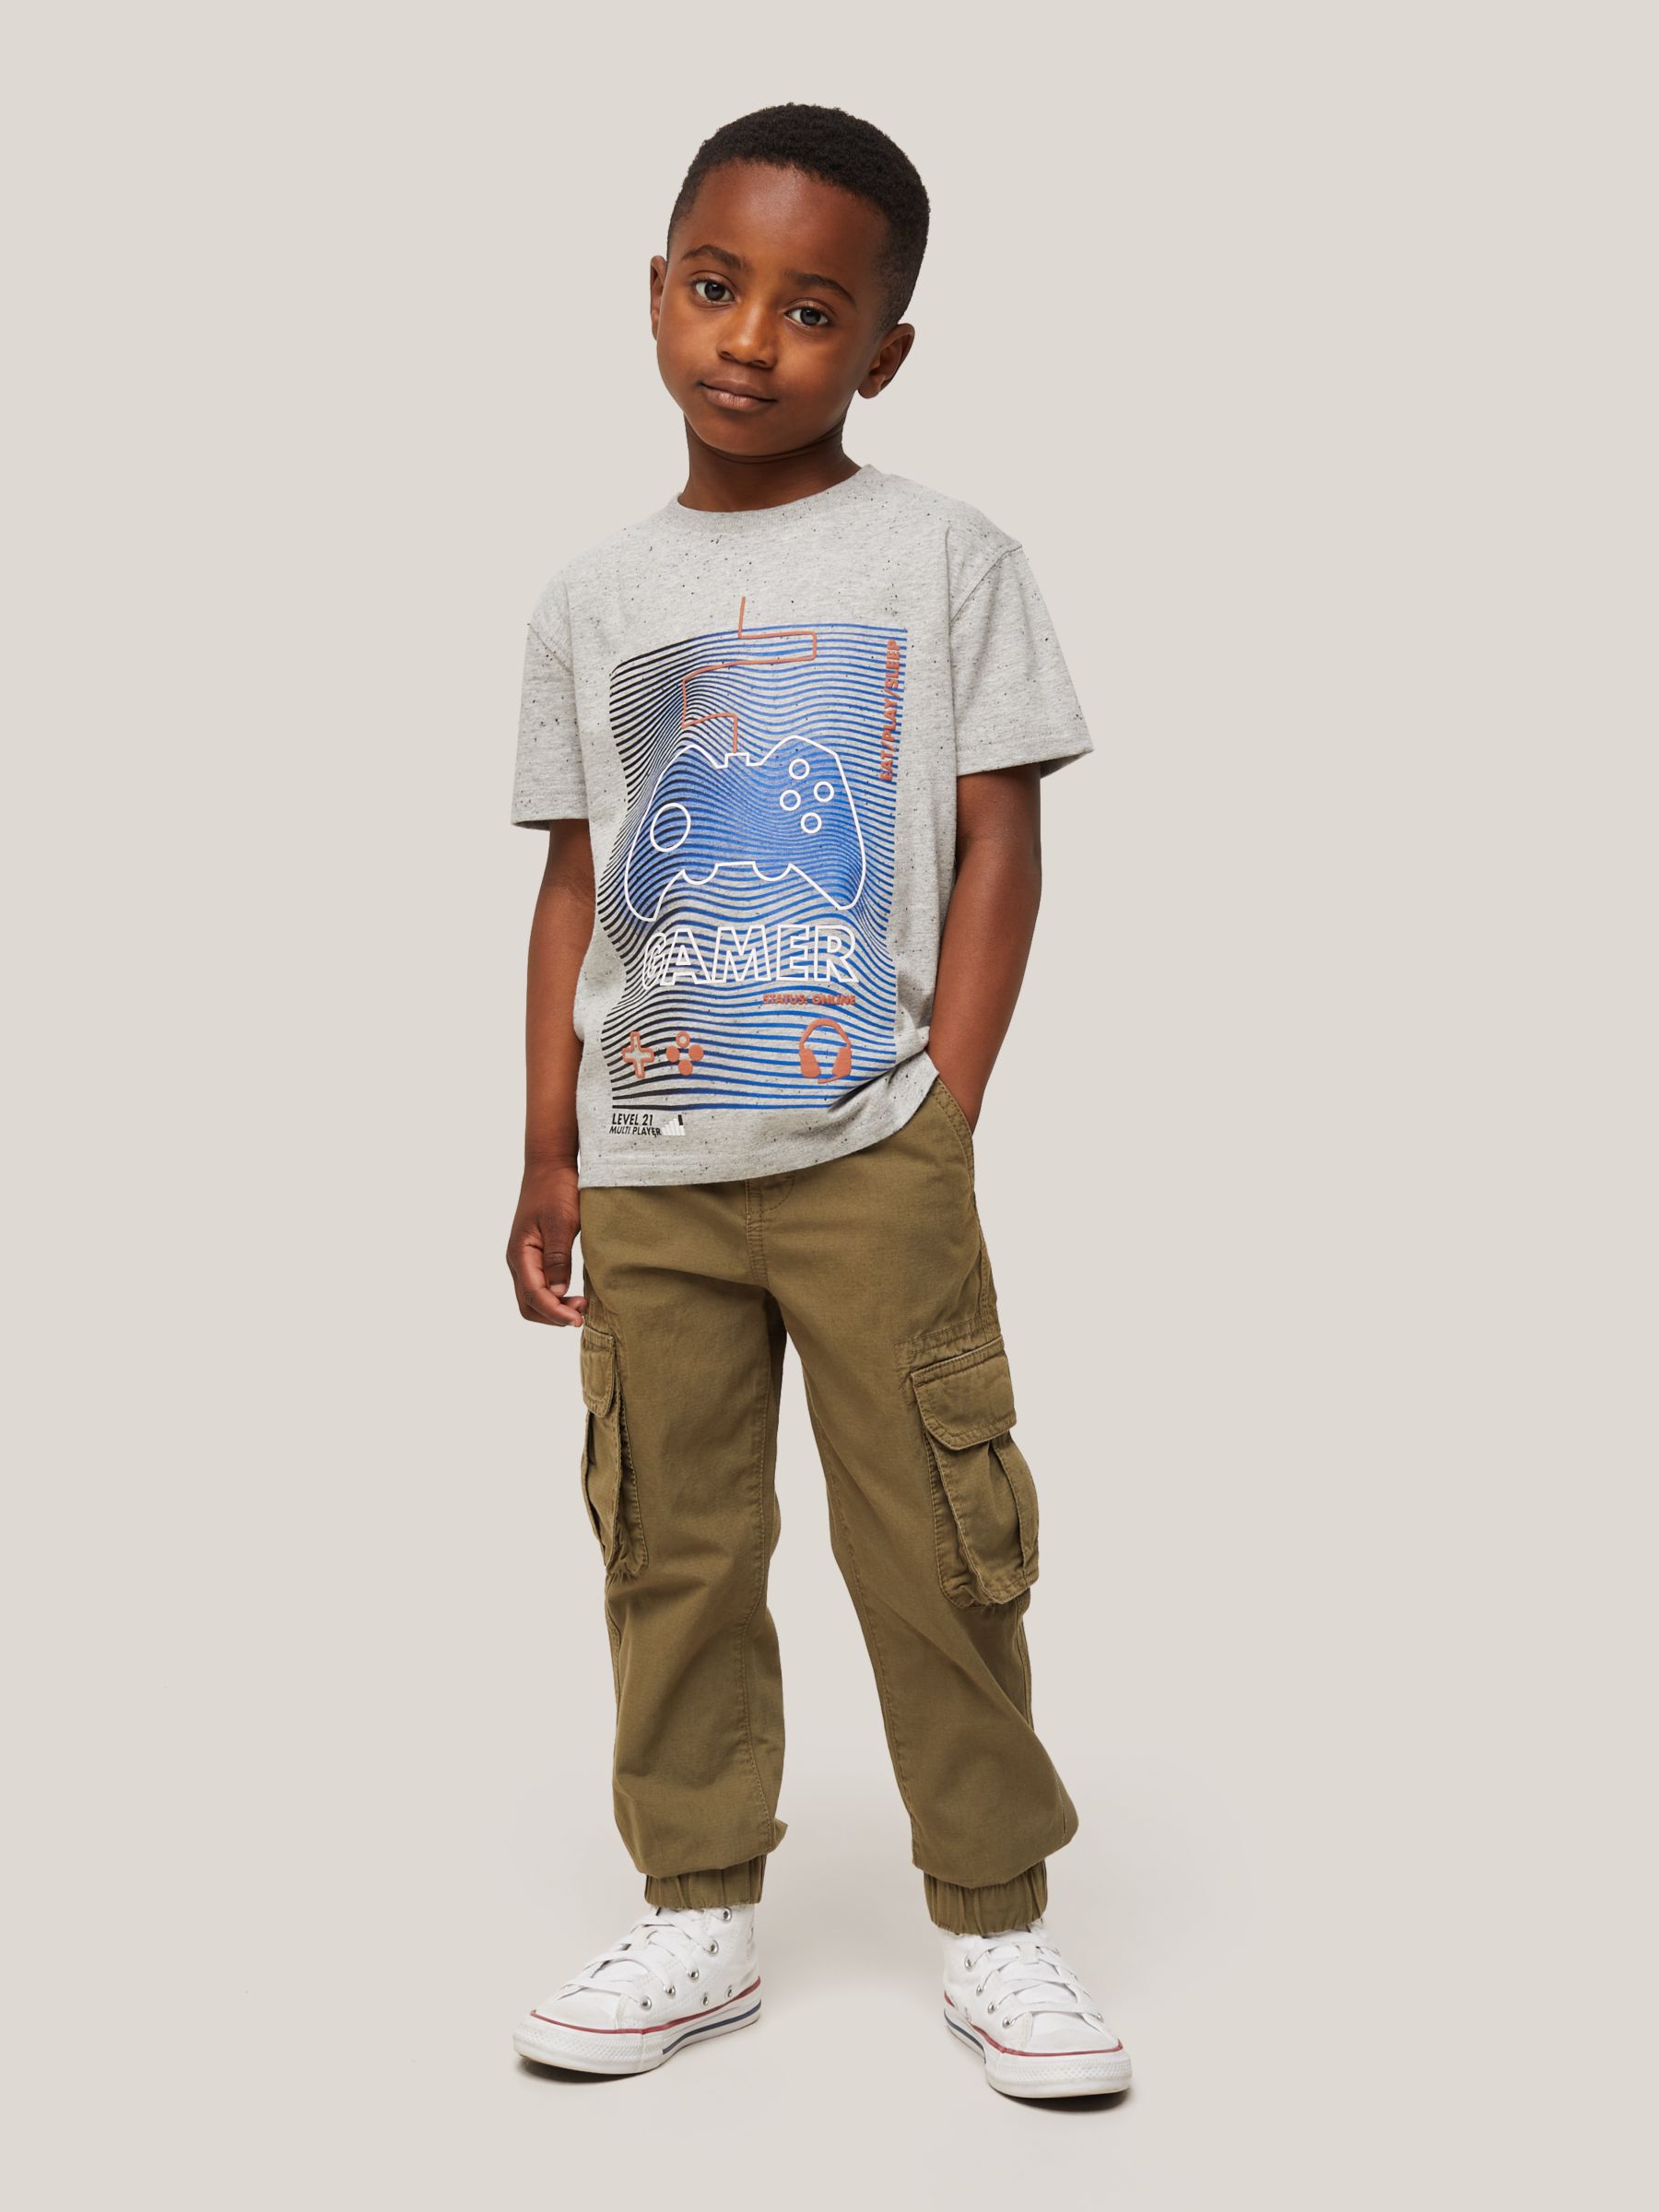 John Lewis Kids' Gamer Graphic T-Shirt, Marl Grey